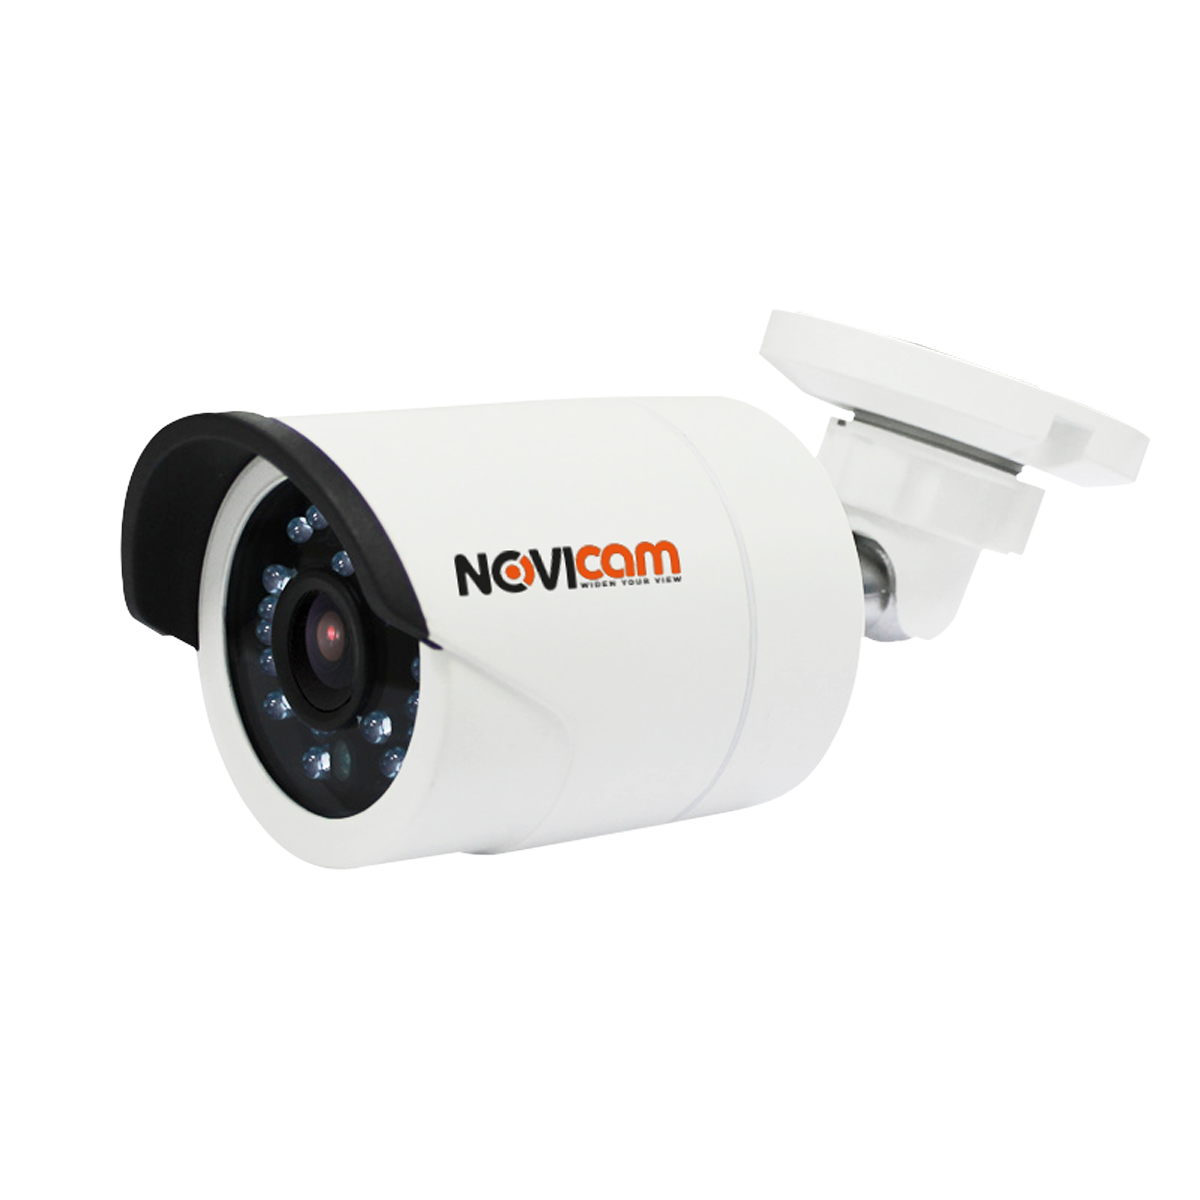 Регистратор novicam. Всепогодная видеокамера NOVICAM ac13w. Видеокамера IP NOVICAM n39lwx. IP n23w NOVICAM (ver.1116) уличная всепогодная IP видеокамера. Видеокамера наружная NOVICAM Pro IP nc13wp.